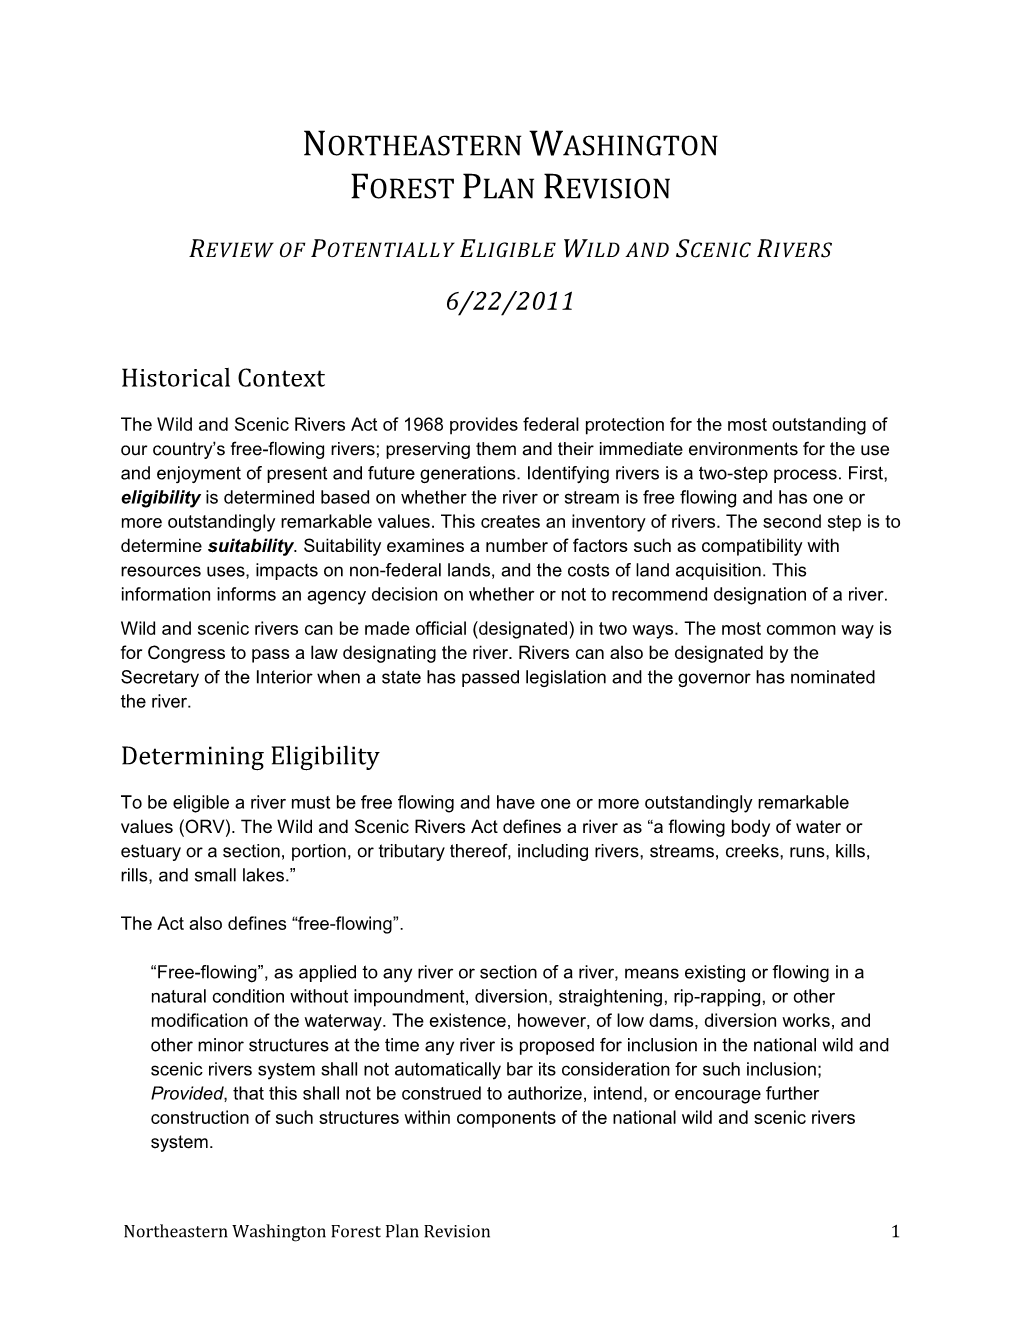 Northeastern Washington Forest Plan Revision